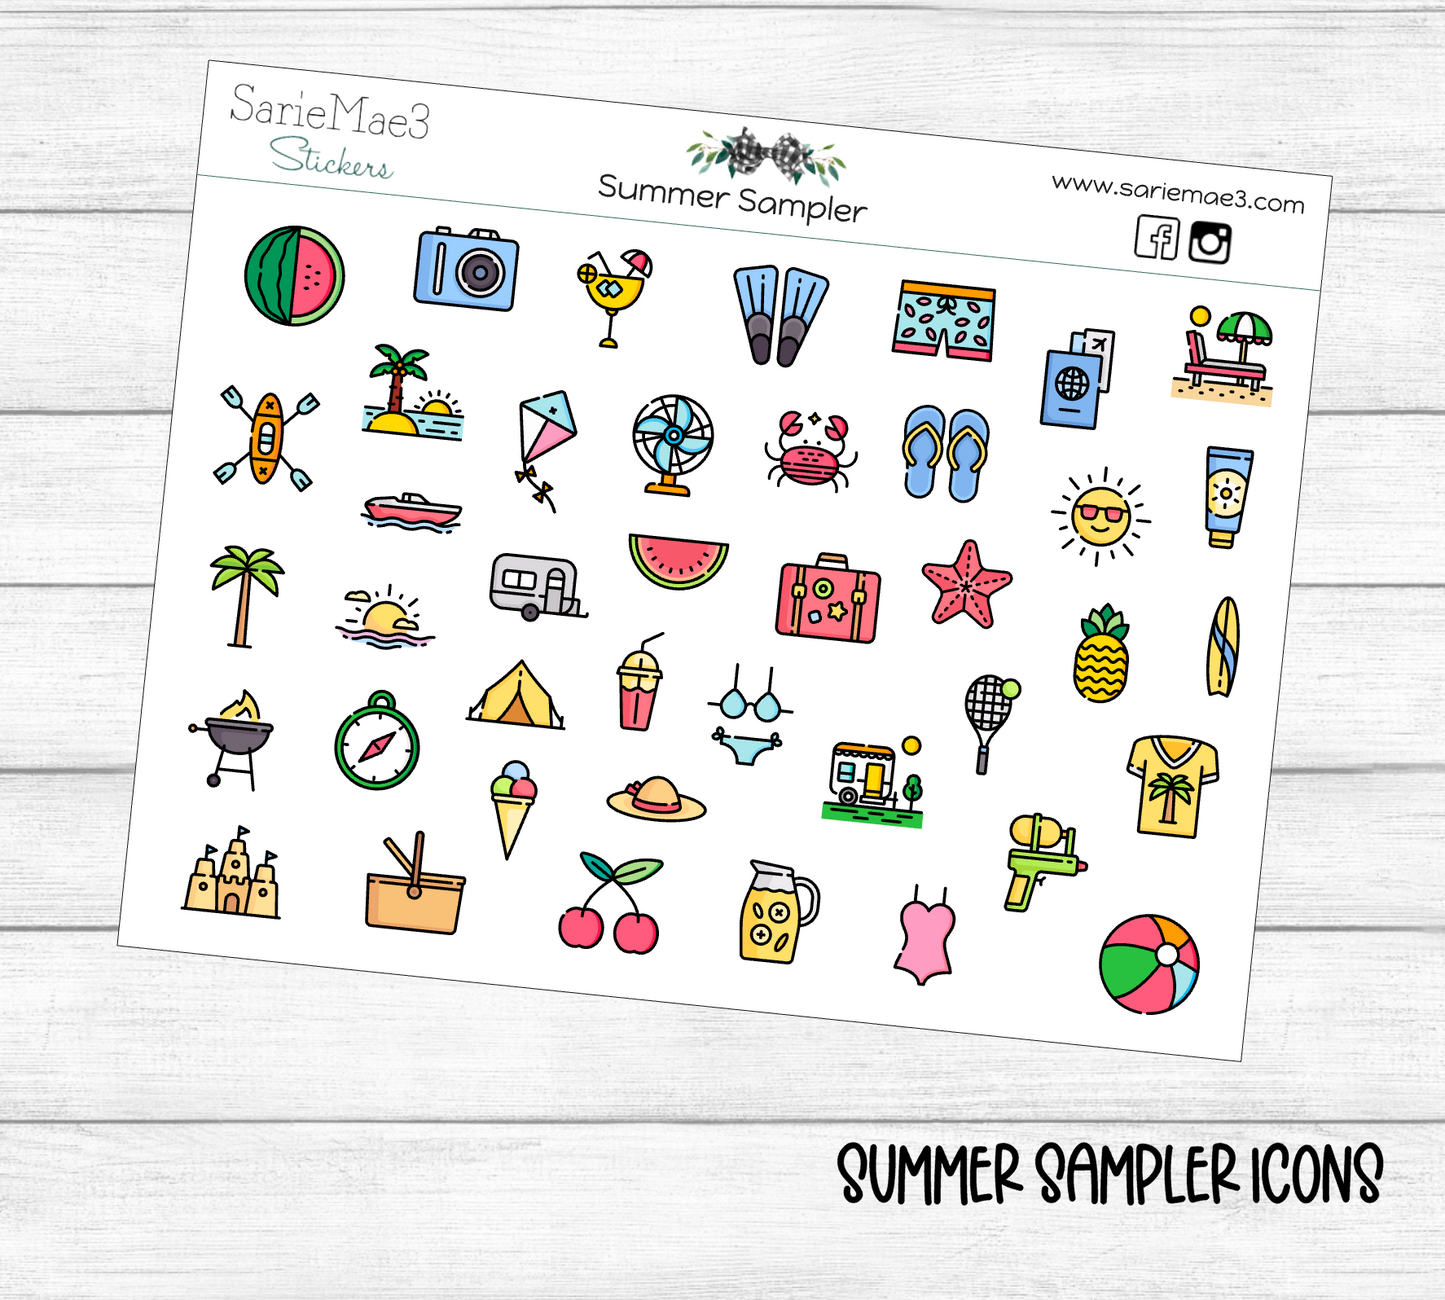 Summer Sampler Icons